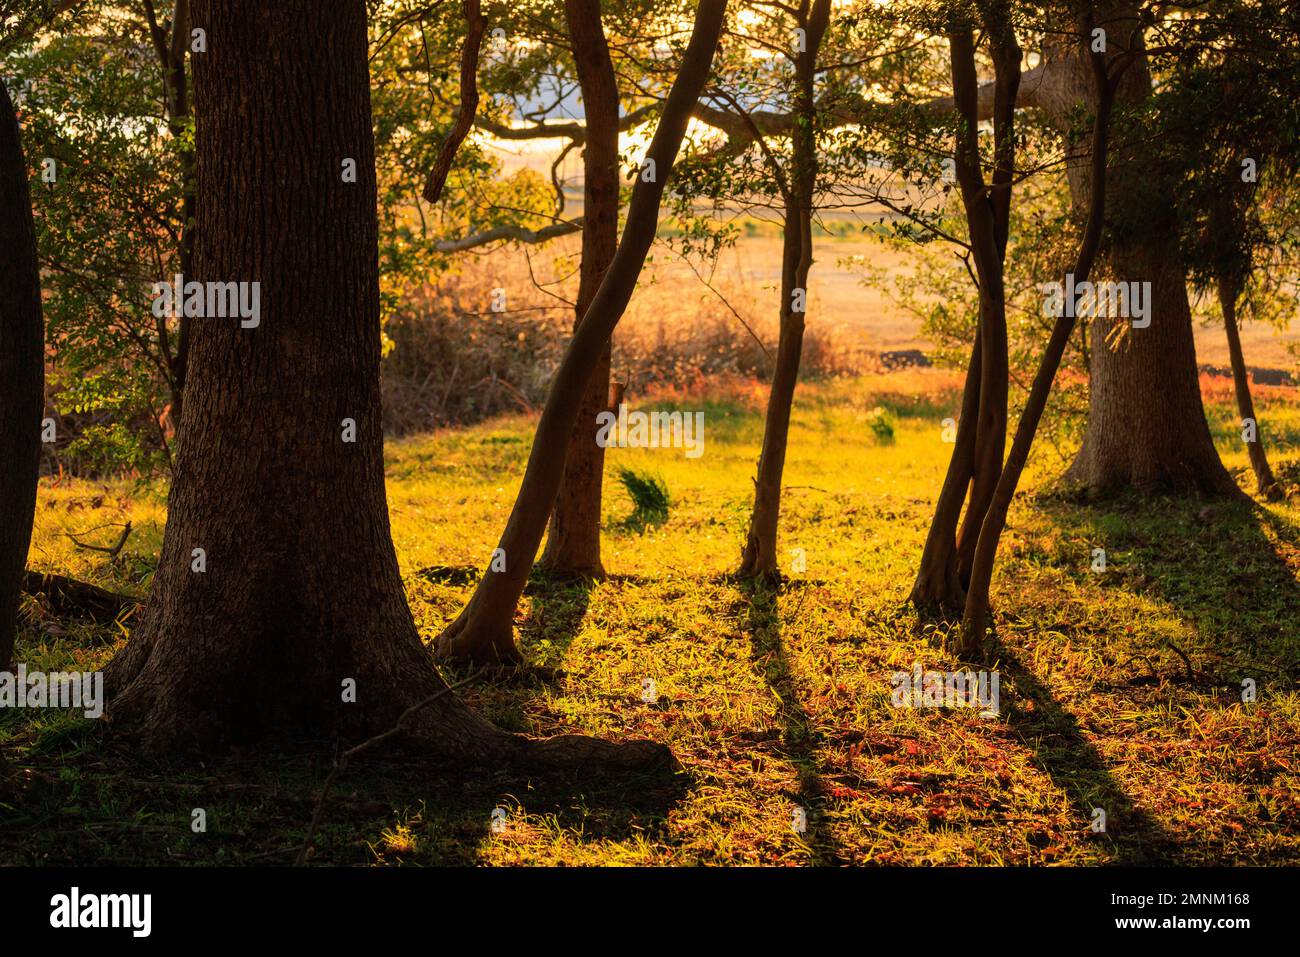 Belle lumière dorée brille sur le défrichement herbacé dans les bois au coucher du soleil Banque D'Images